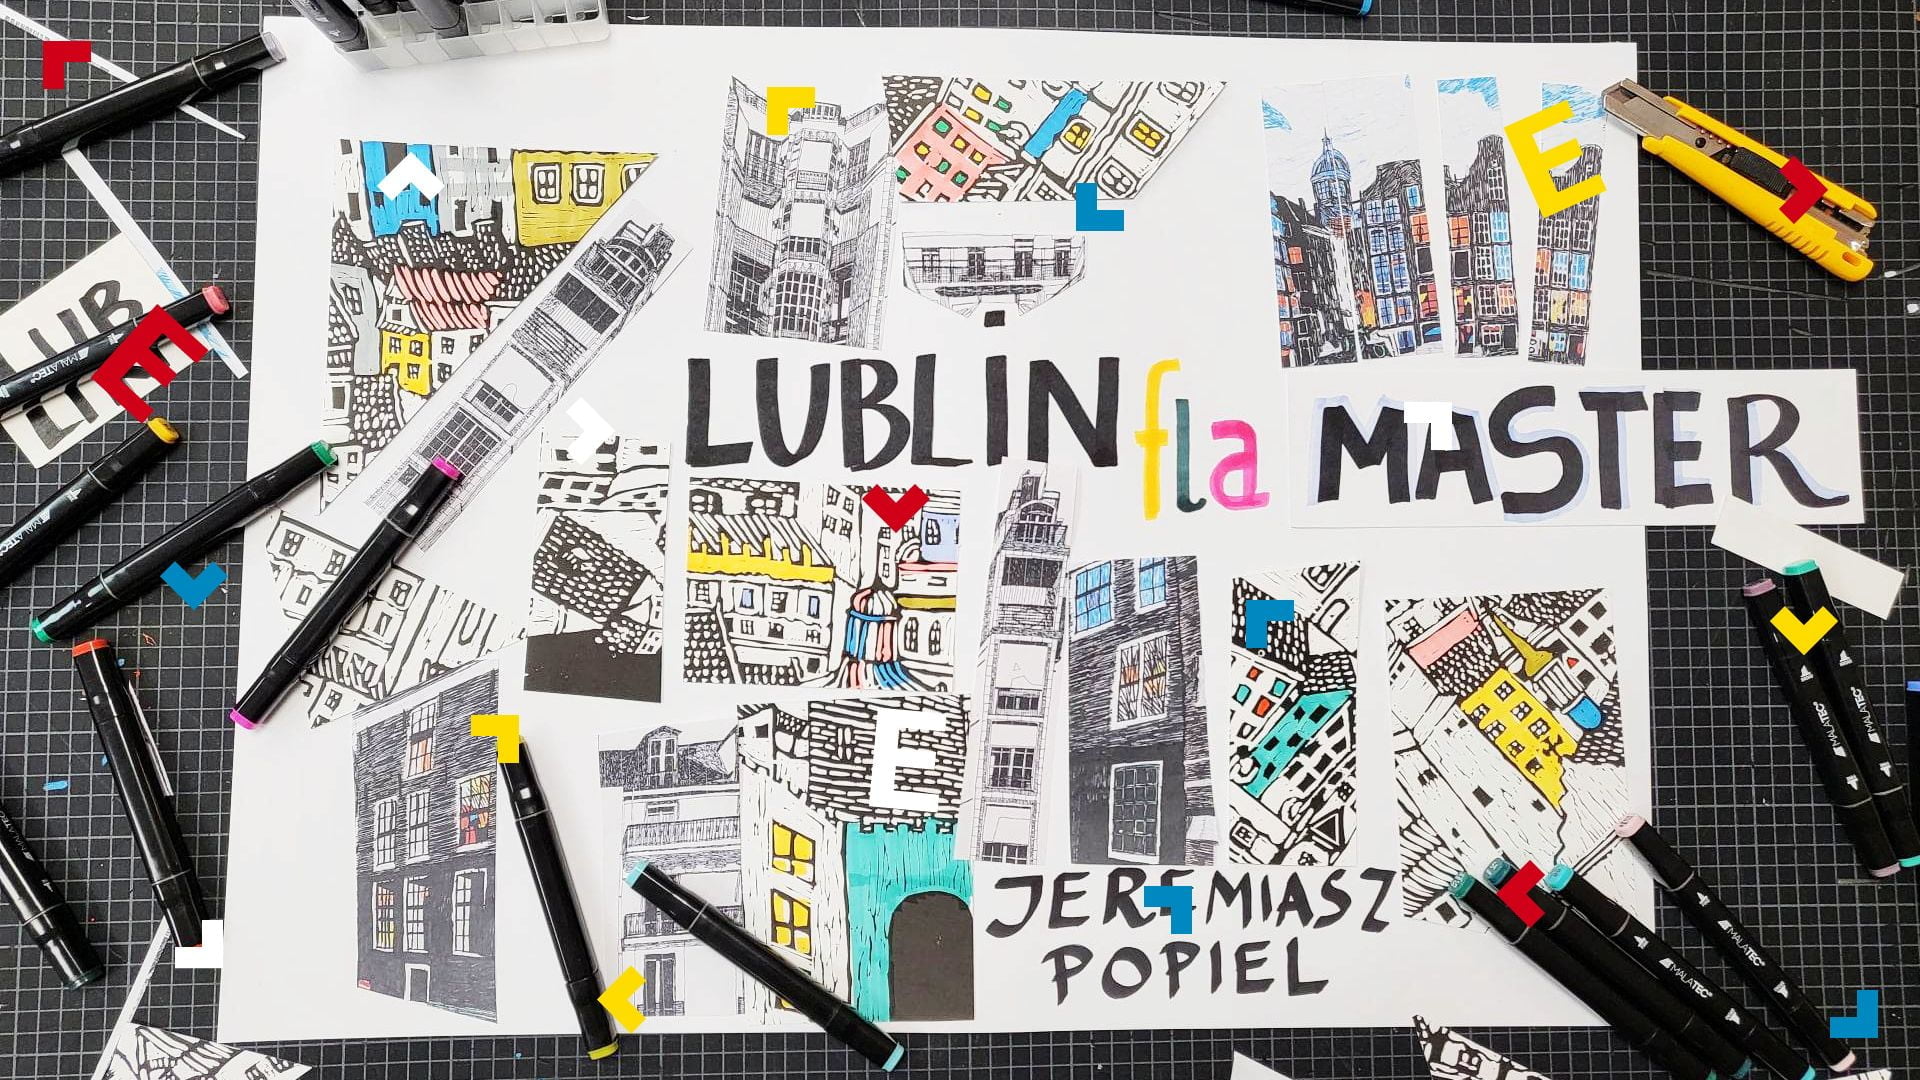 Grafika z plakatem oraz kolorowymi mazakami. Na plakacie jest napis "Lublin flaMaster".